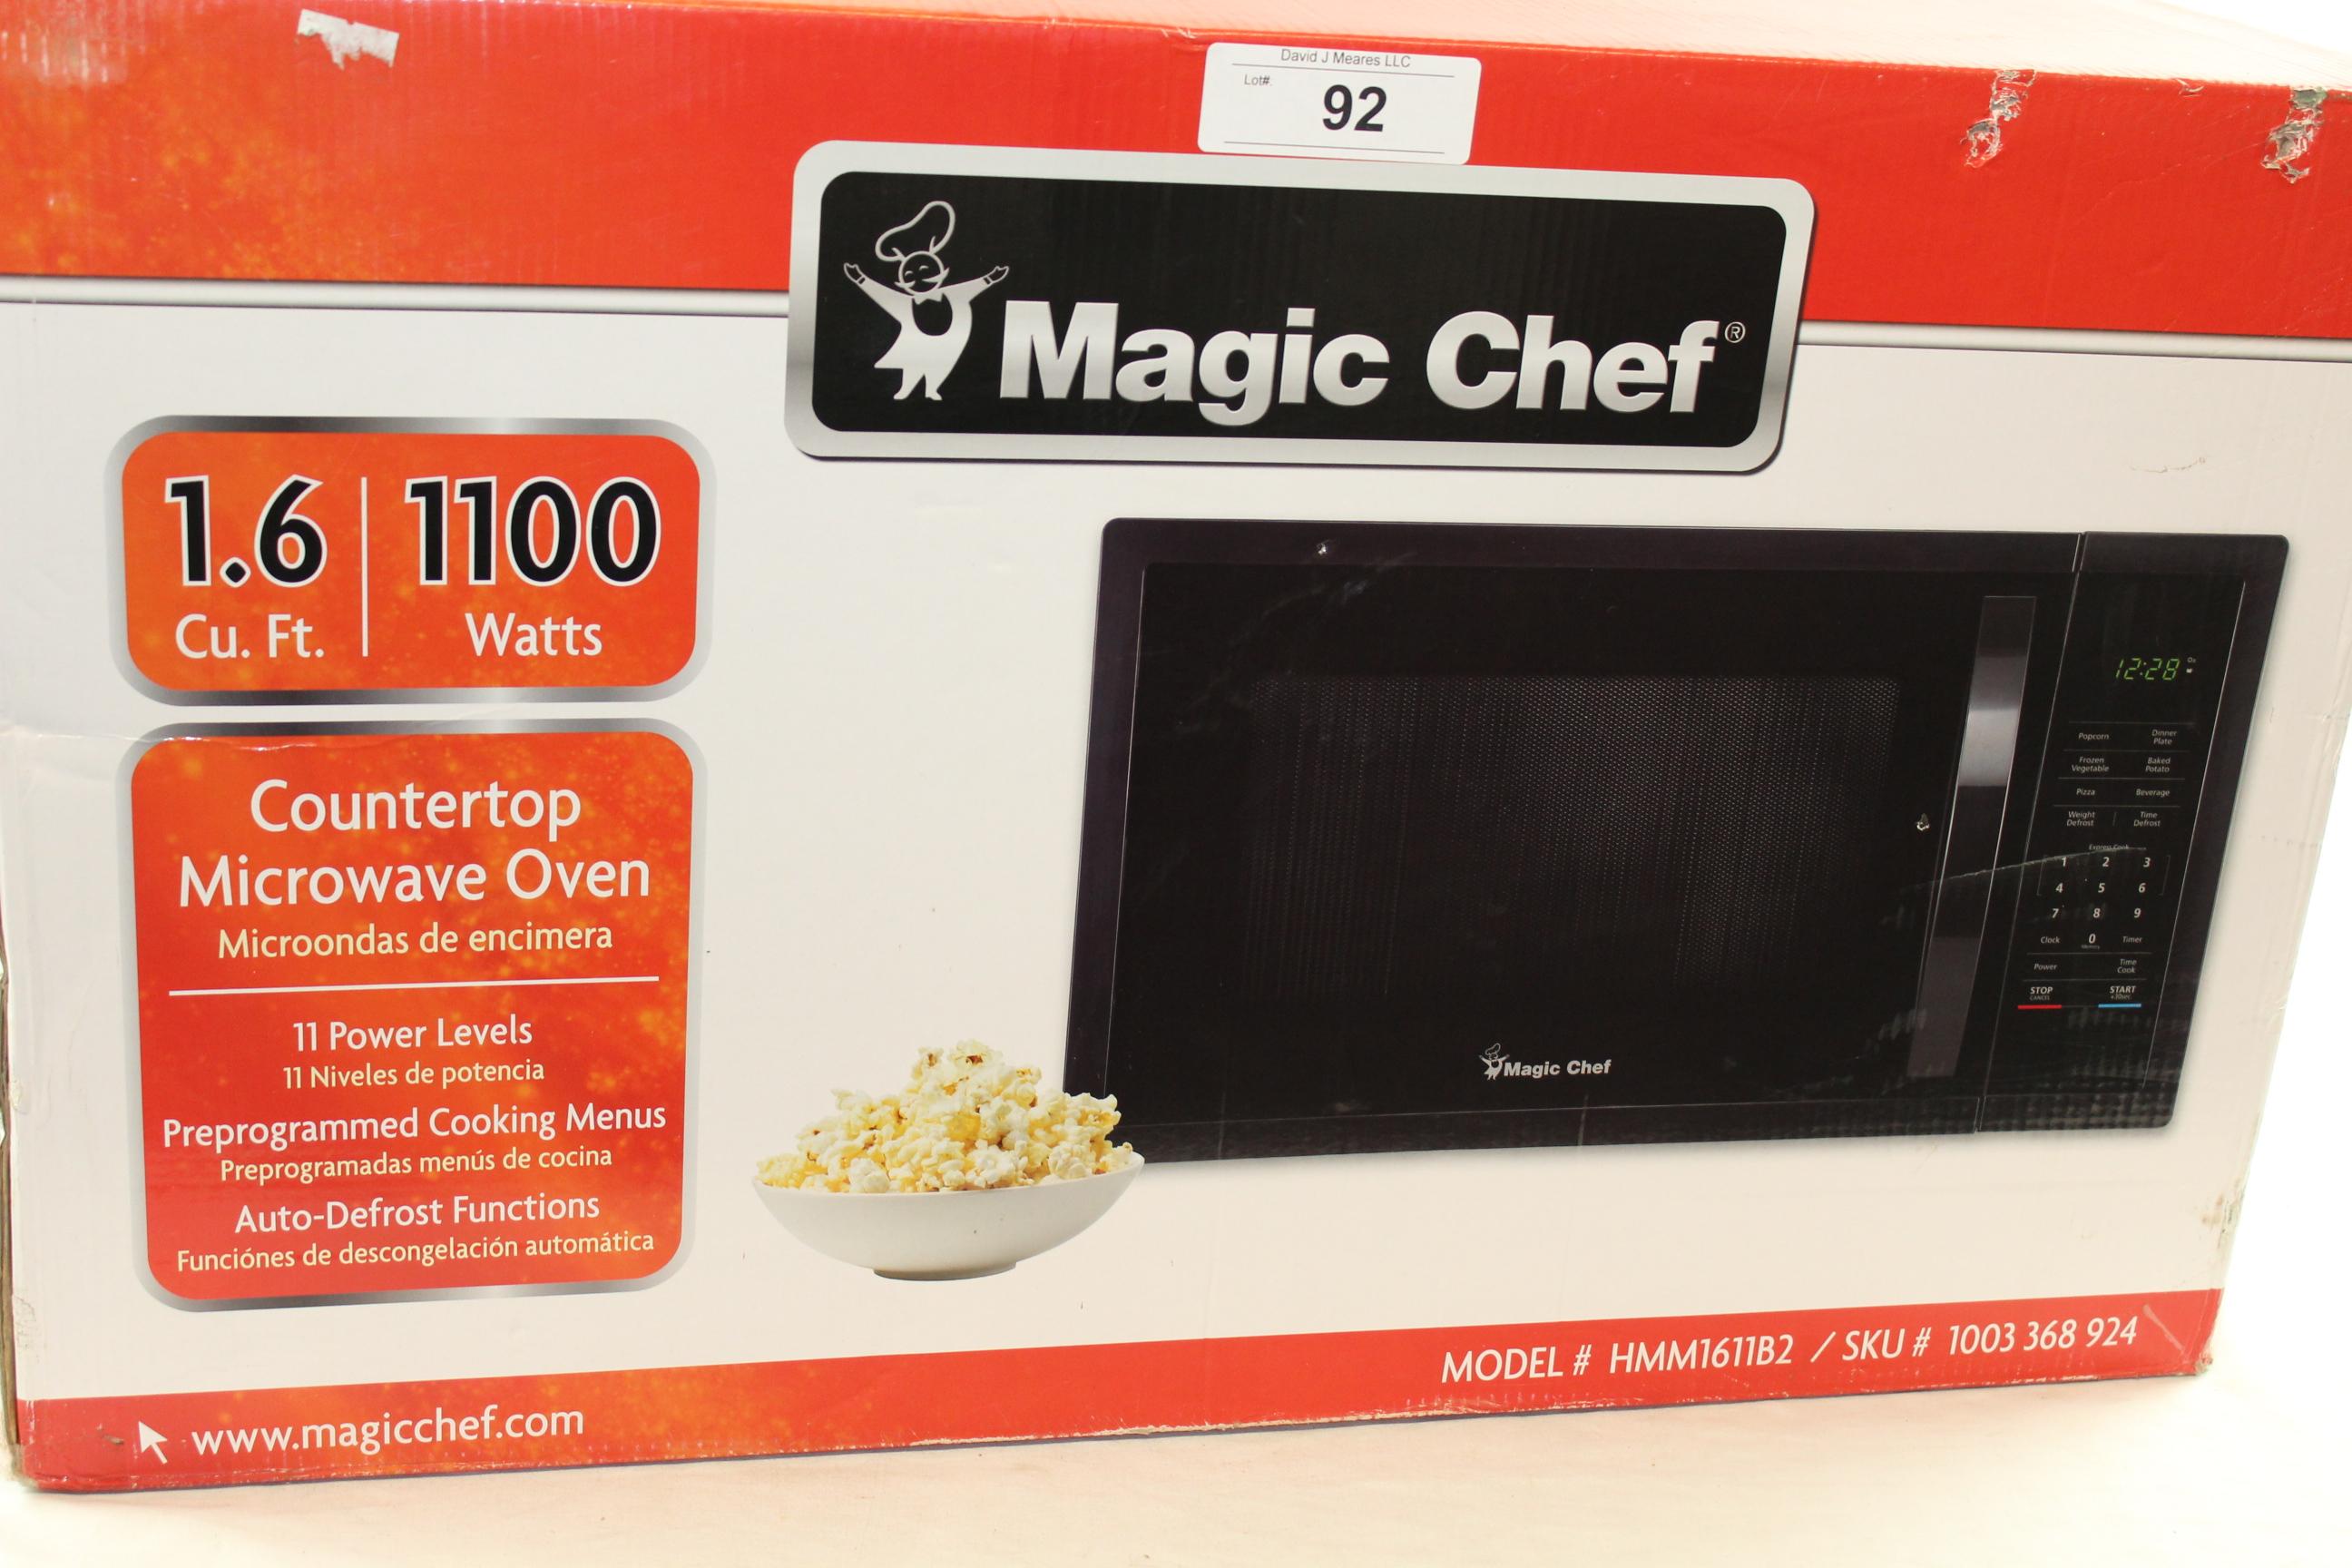 Magic Chef 1.6 Cu. Ft. 1100 Watt Countertop Microwave Oven